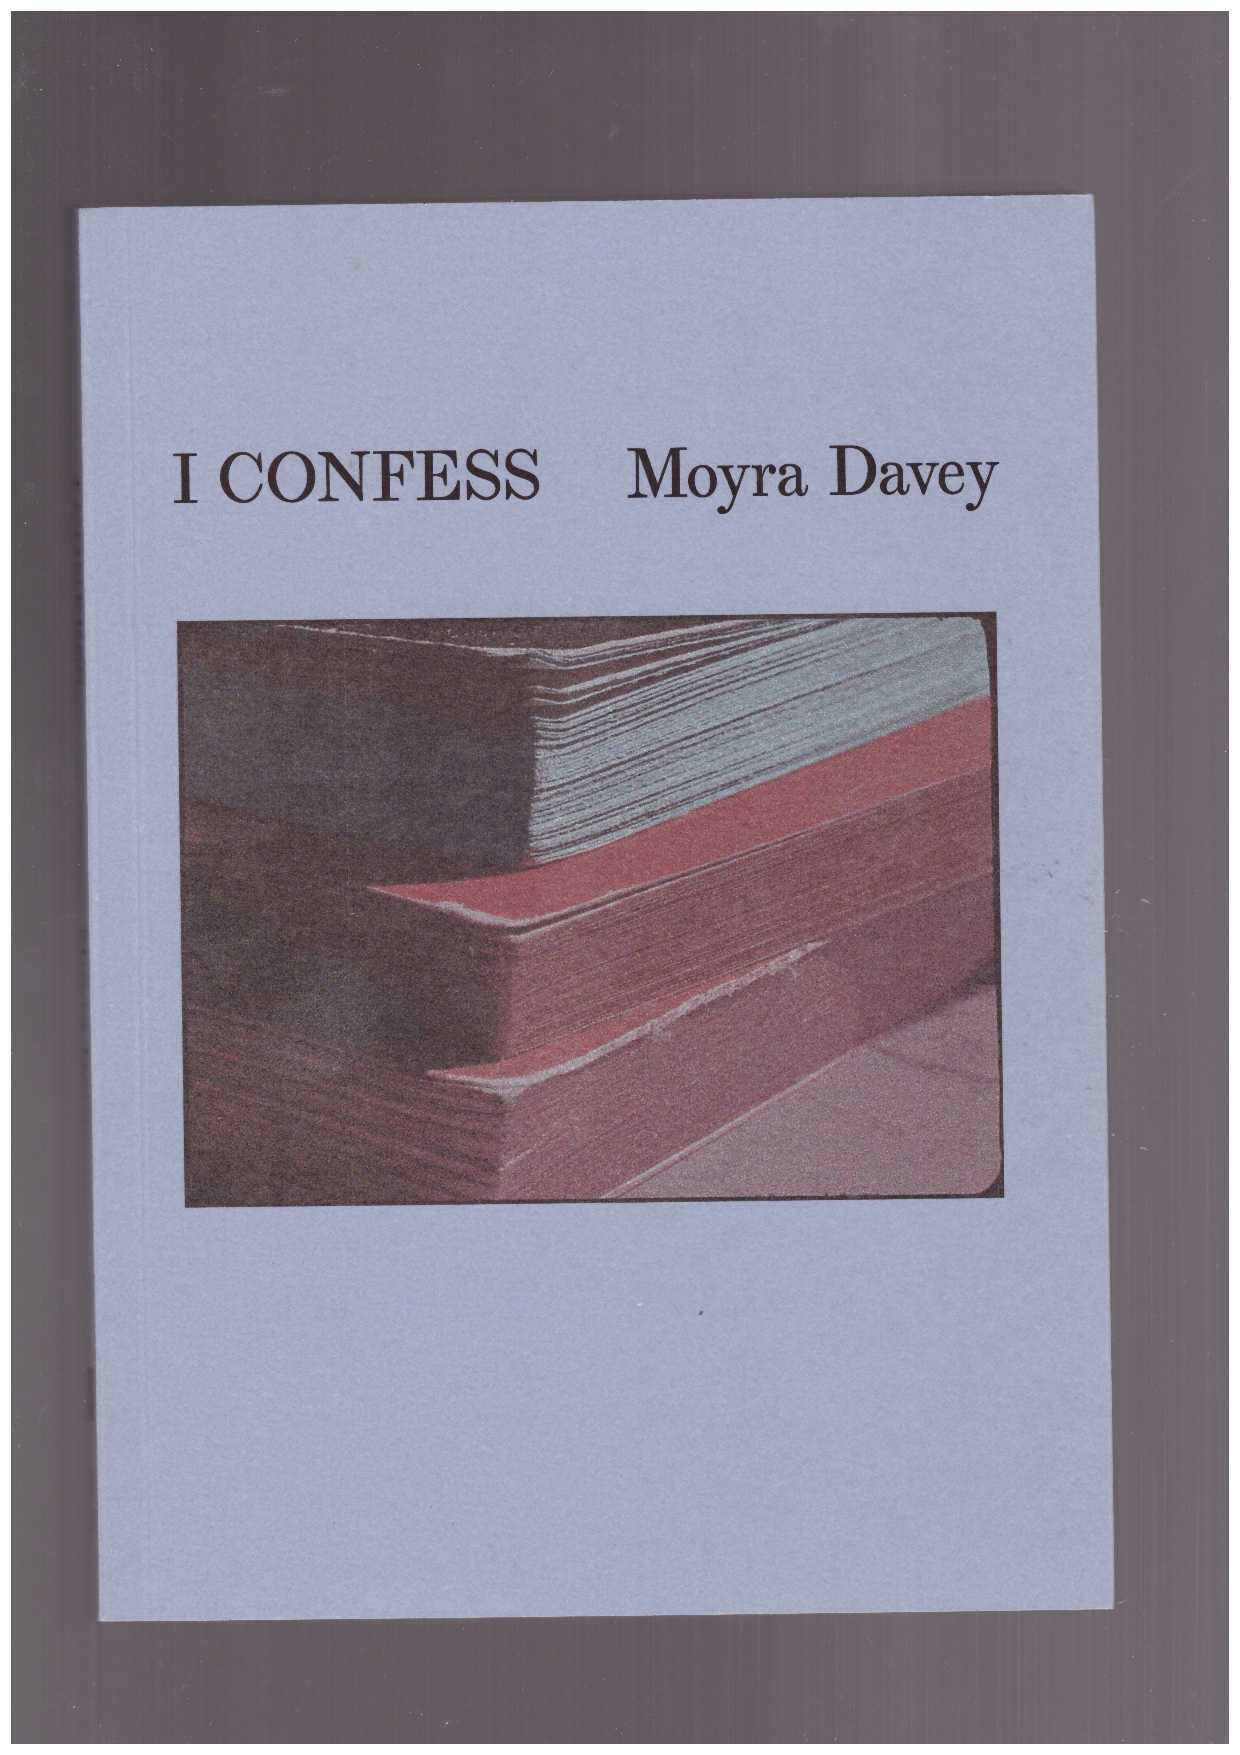 DAVEY, Moyra - I Confess